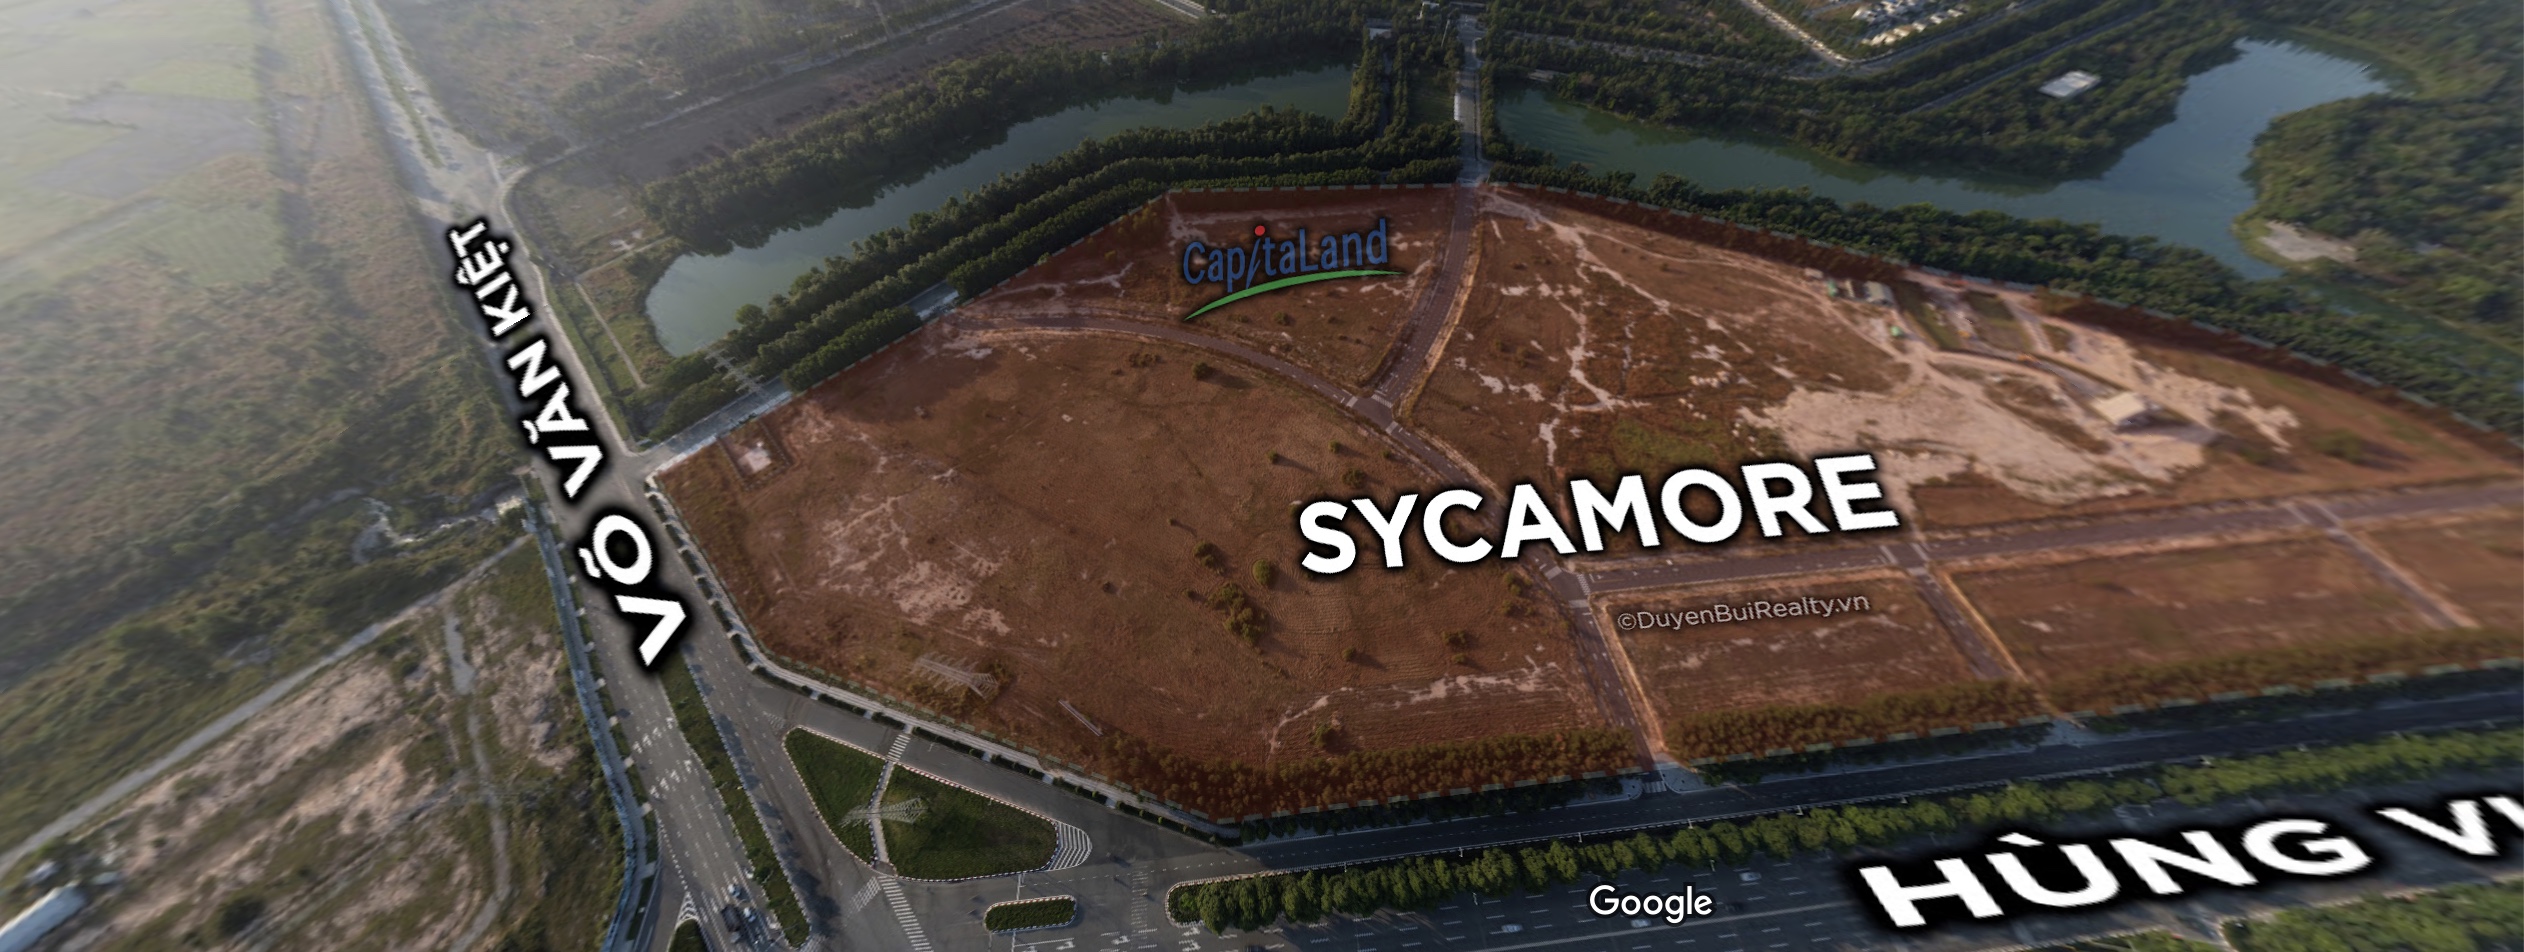 Toàn cảnh dự án Sycamore